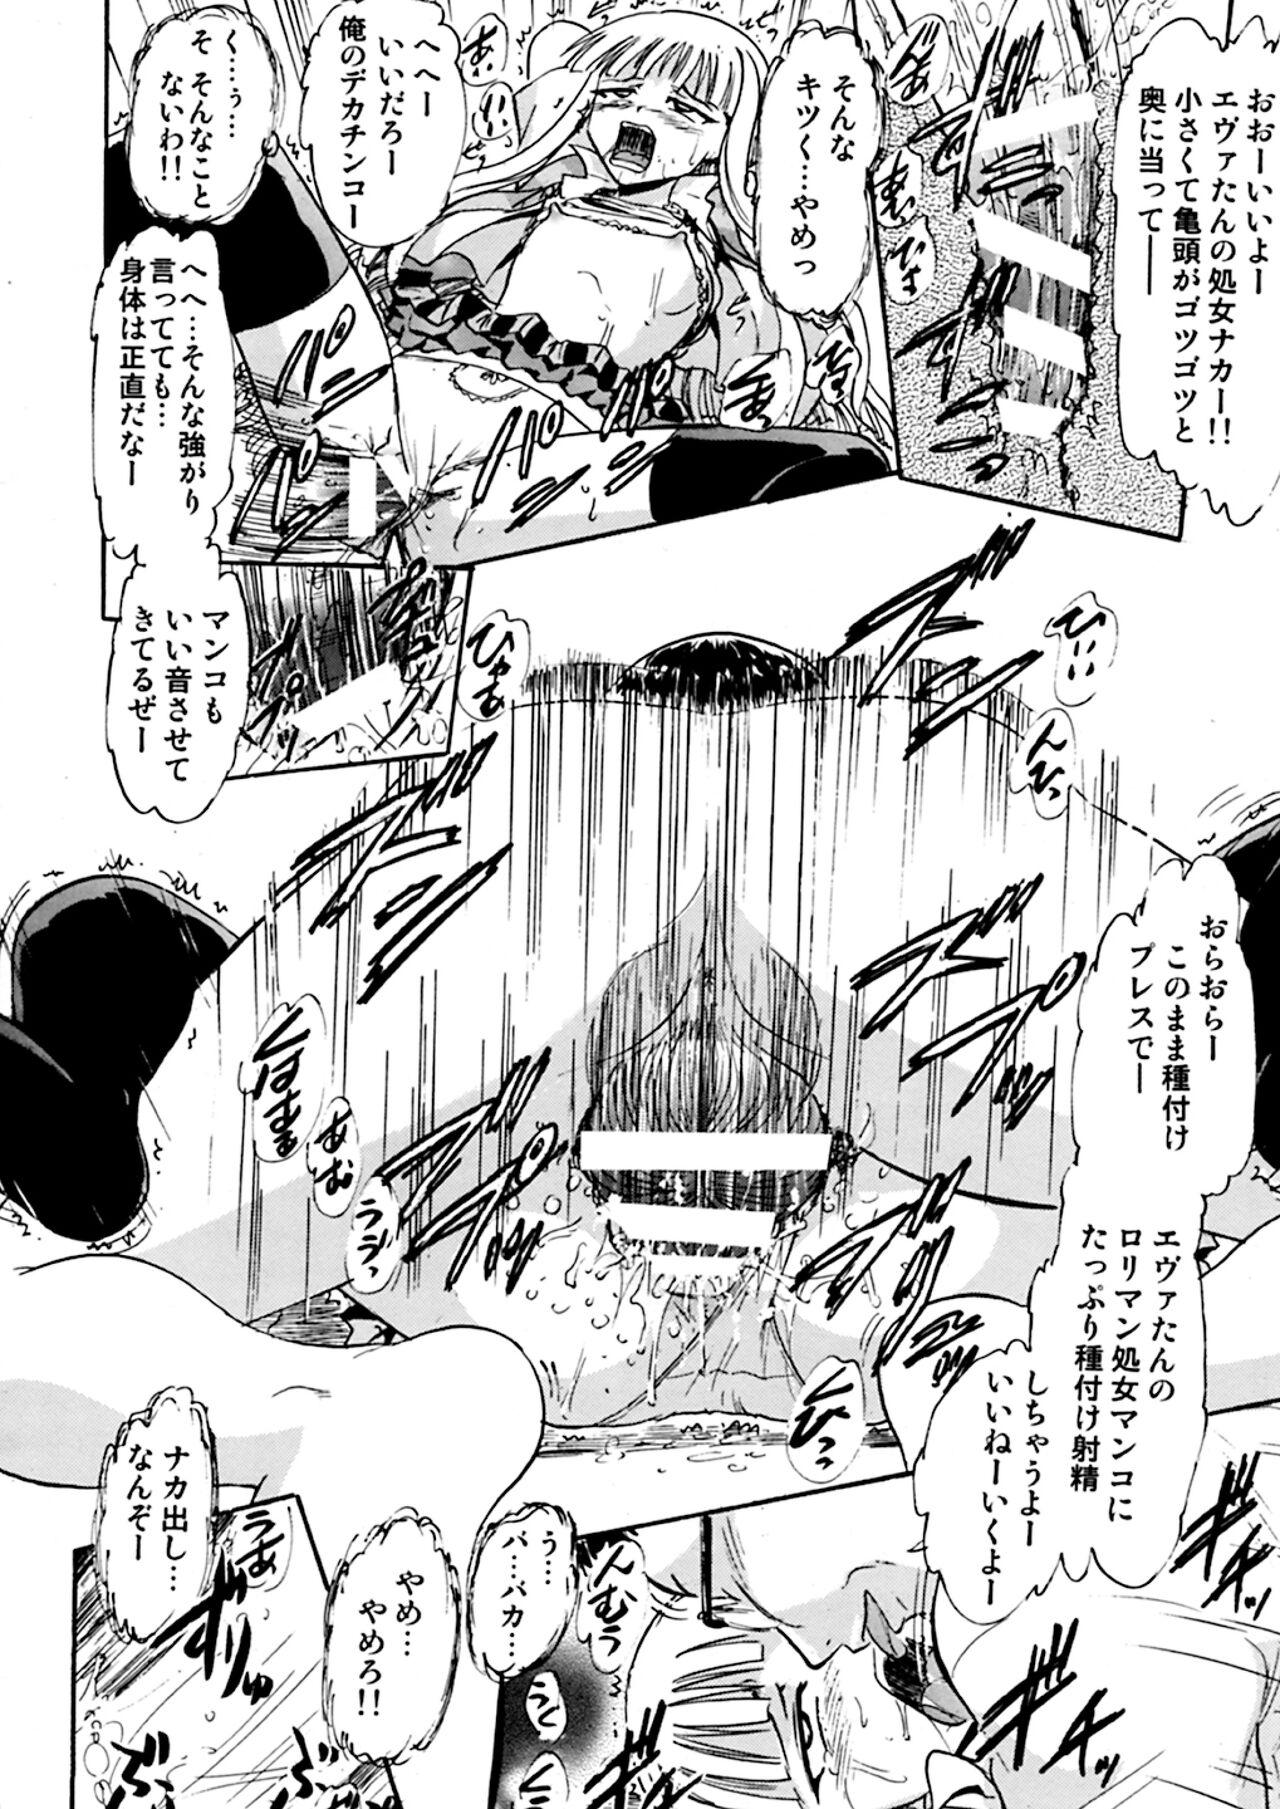 Bucetinha Kugutsu no Eva-tan - Mahou sensei negima Wild Amateurs - Page 9